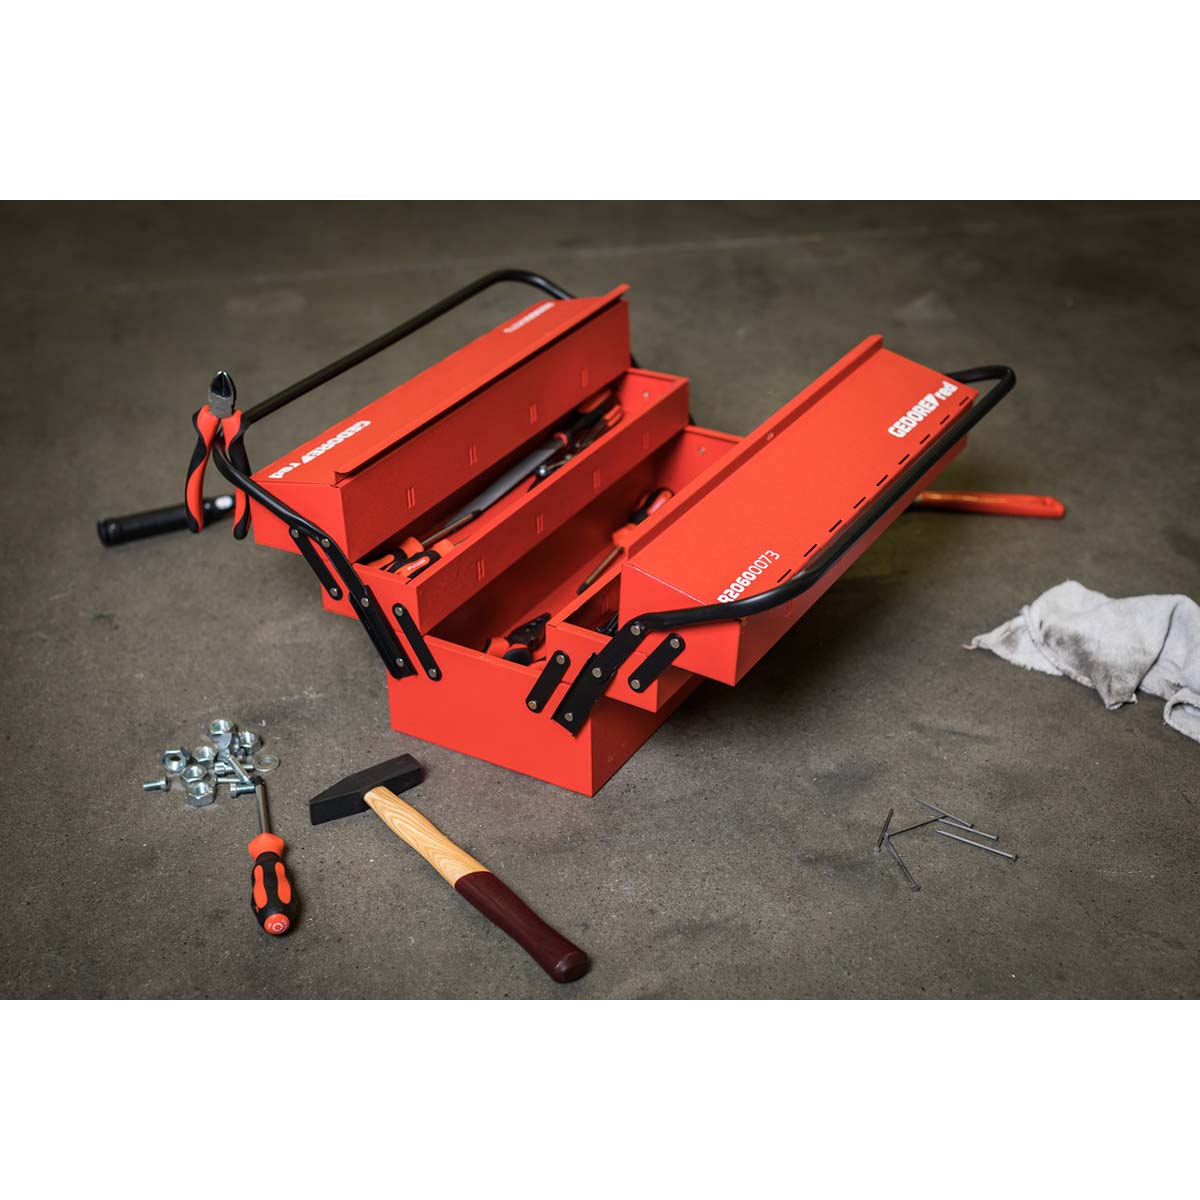 GEDORE red R20600073 - Caja de herramientas, 5 compartimentos, 535x260x210 mm (3301658)